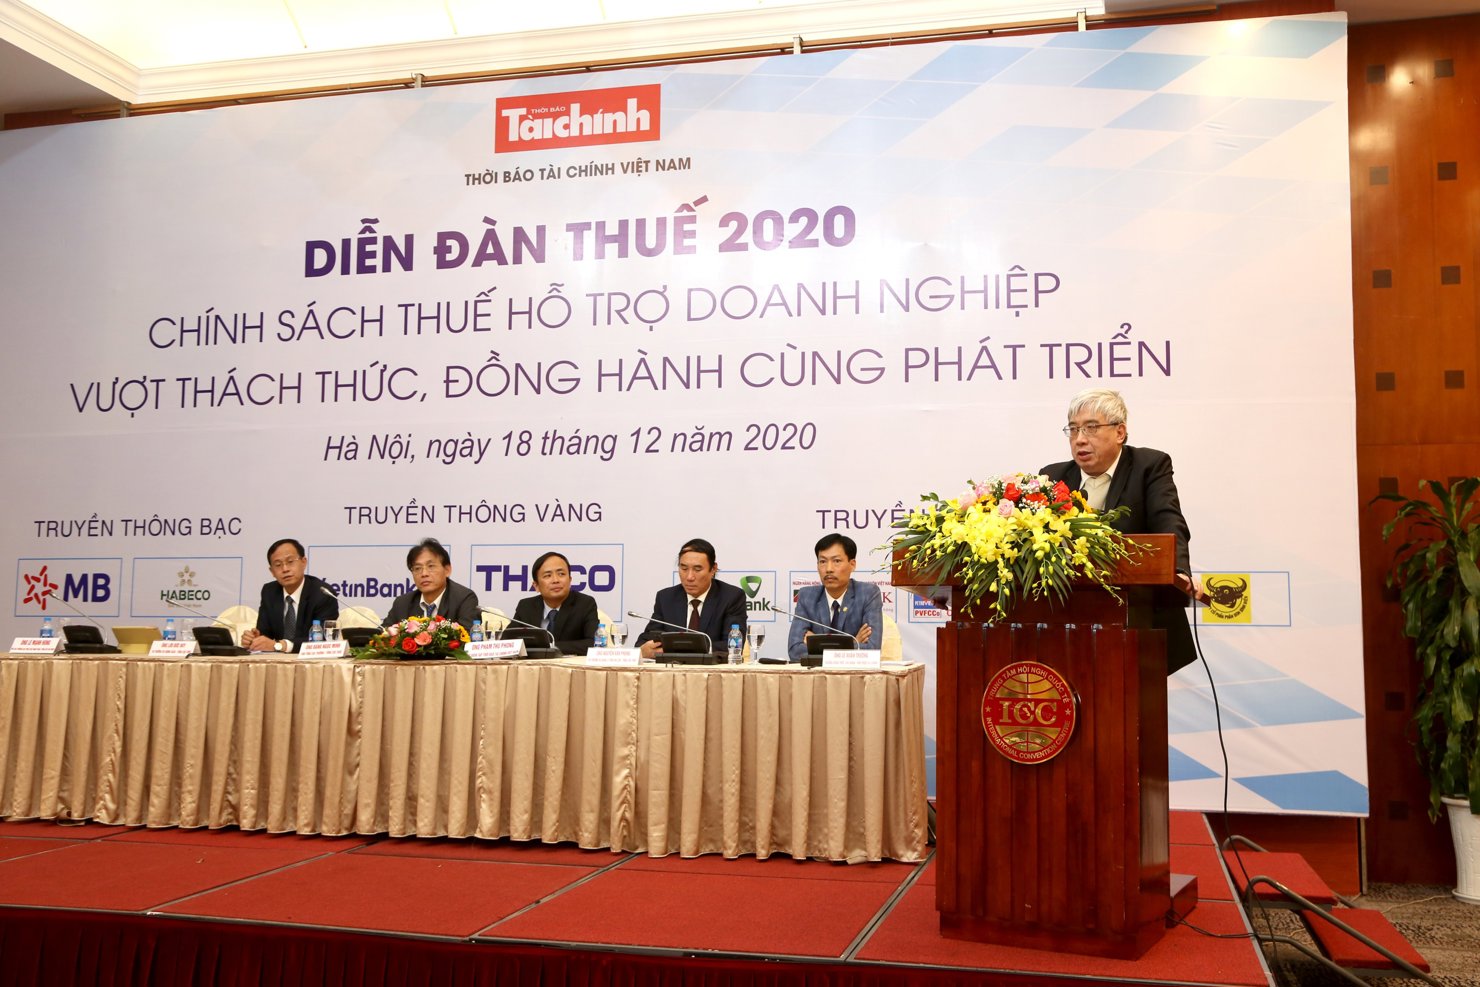 Ông Lê Mạnh Hùng - Phó Cục trưởng Cục Thuế Xuất nhập khẩu (Tổng cục Hải quan) phát biểu tại Diễn đàn Thuế 2020 sáng ngày 18/12/2020.